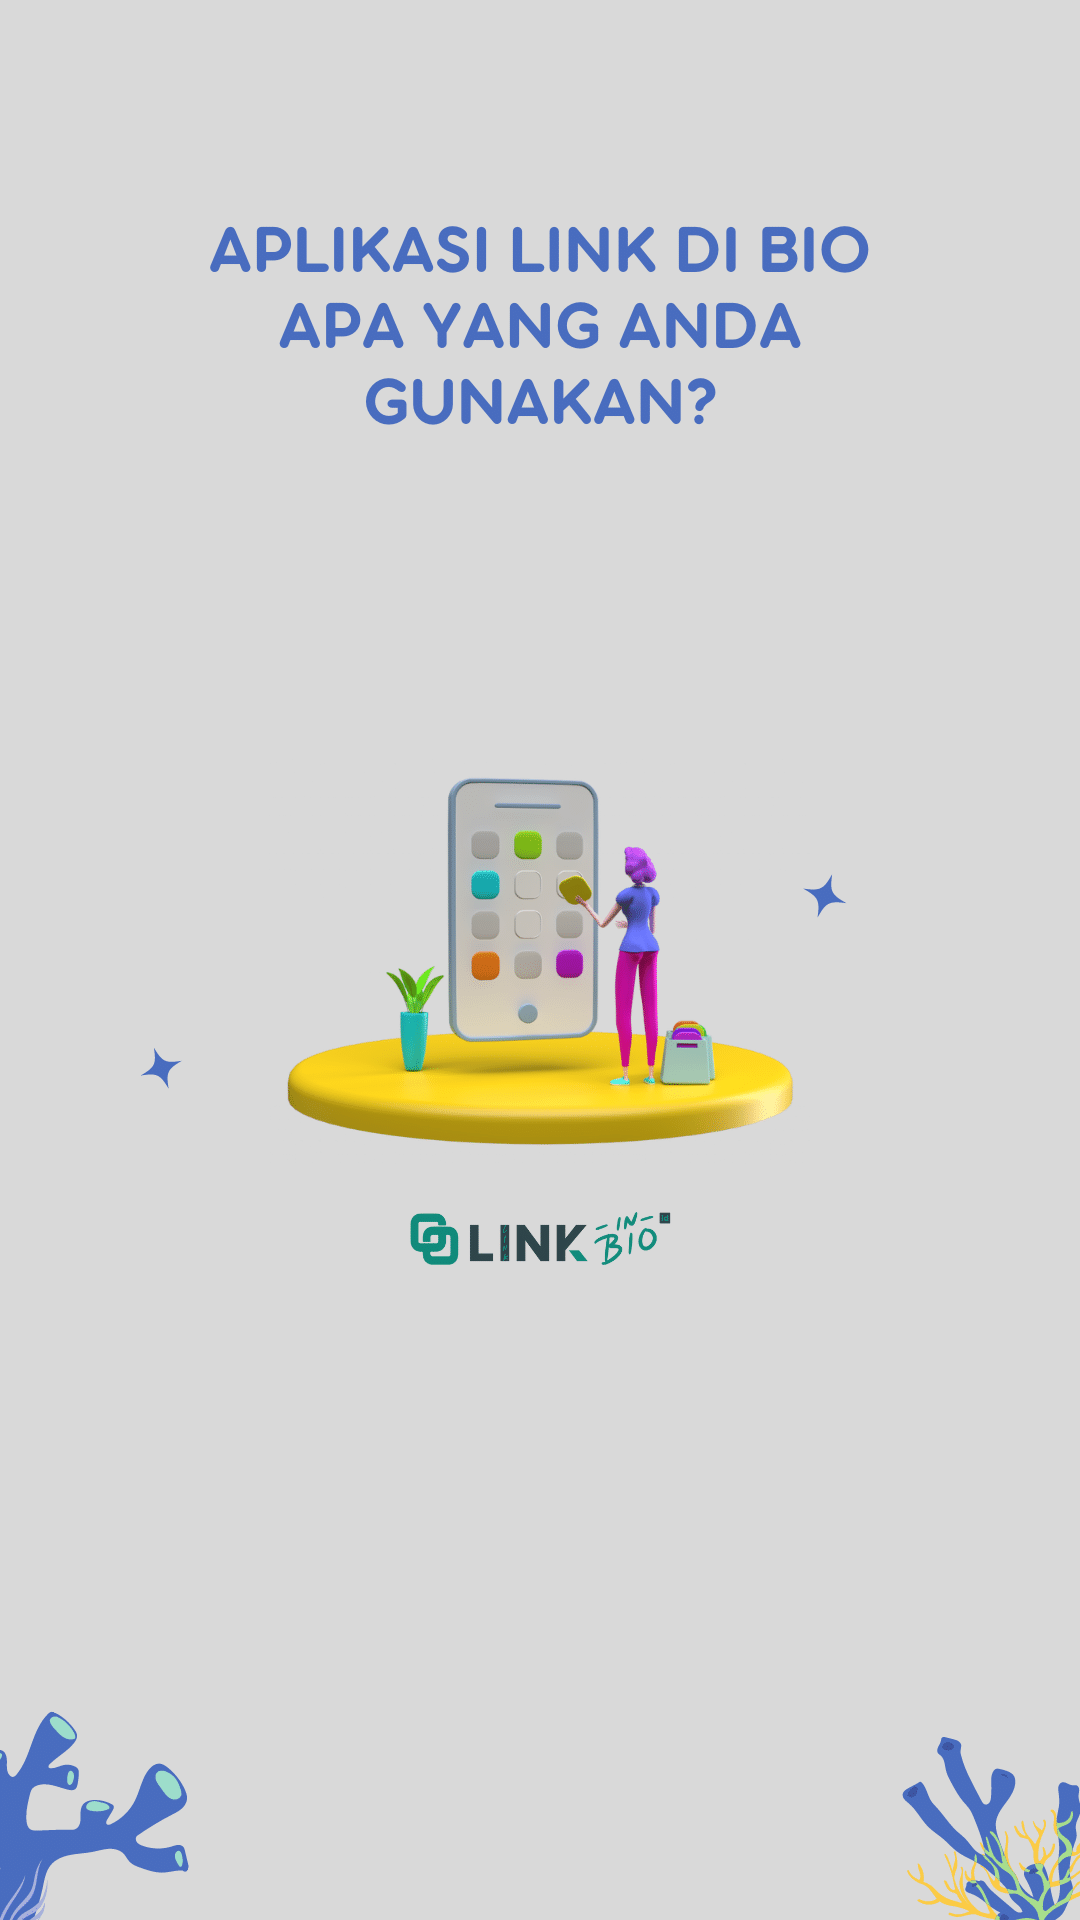 Aplikasi Link di Bio apa yang Anda gunakan? dari Linkinbio.id